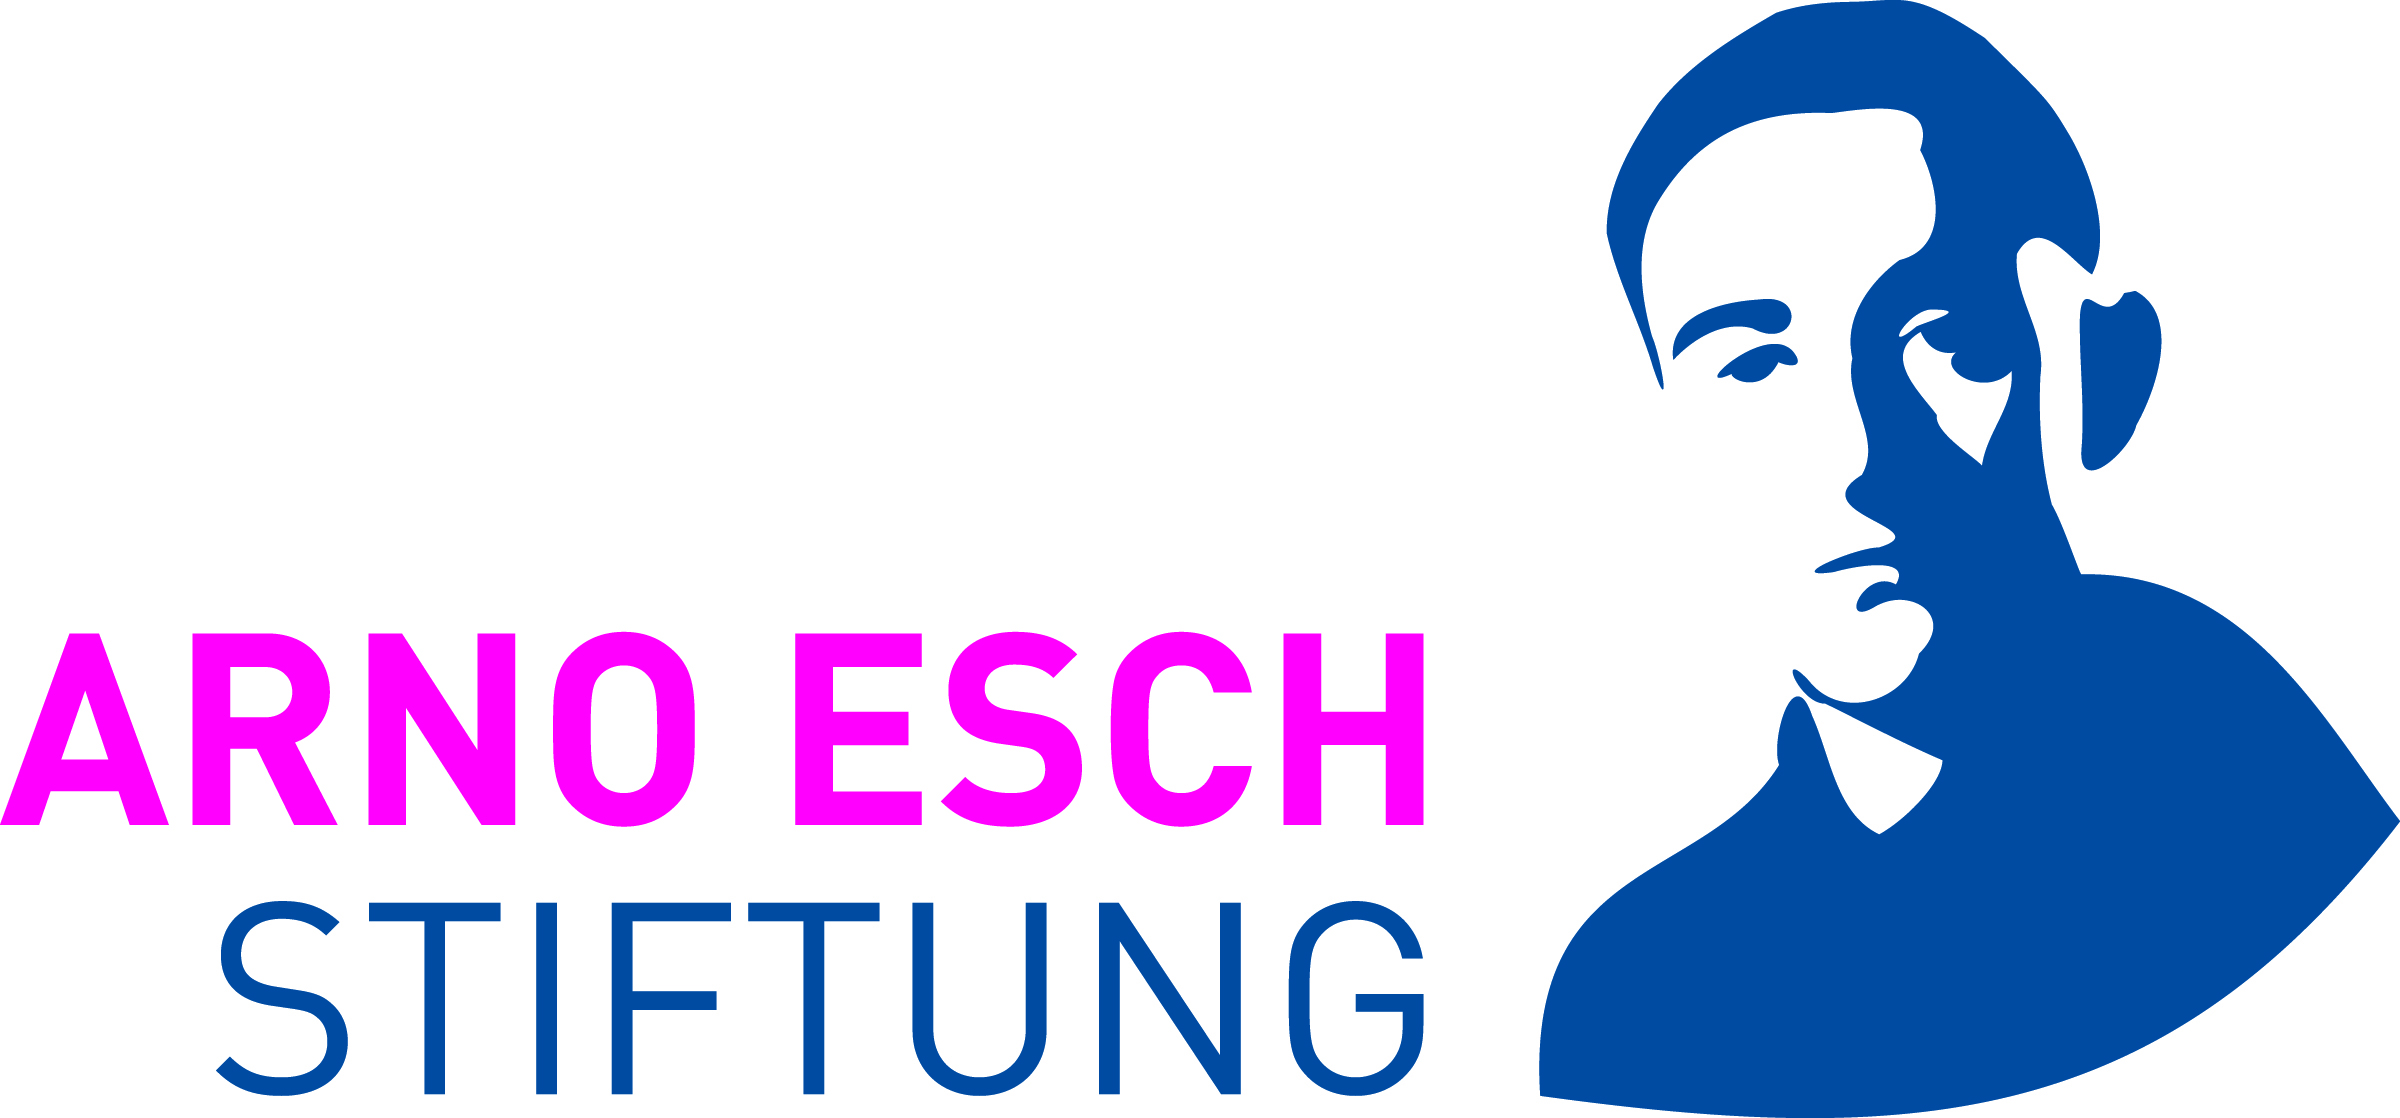 Arno Esch Stiftung Logo